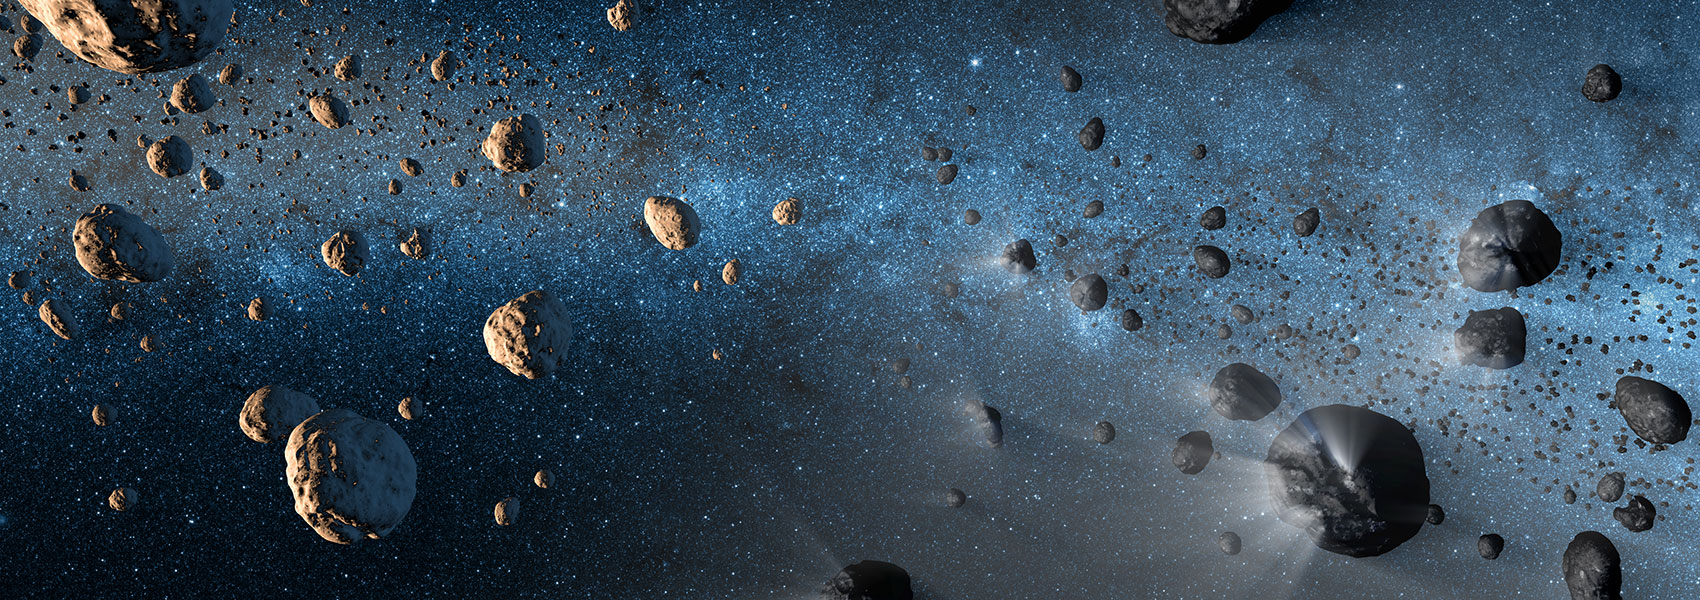 Asteroidscomets